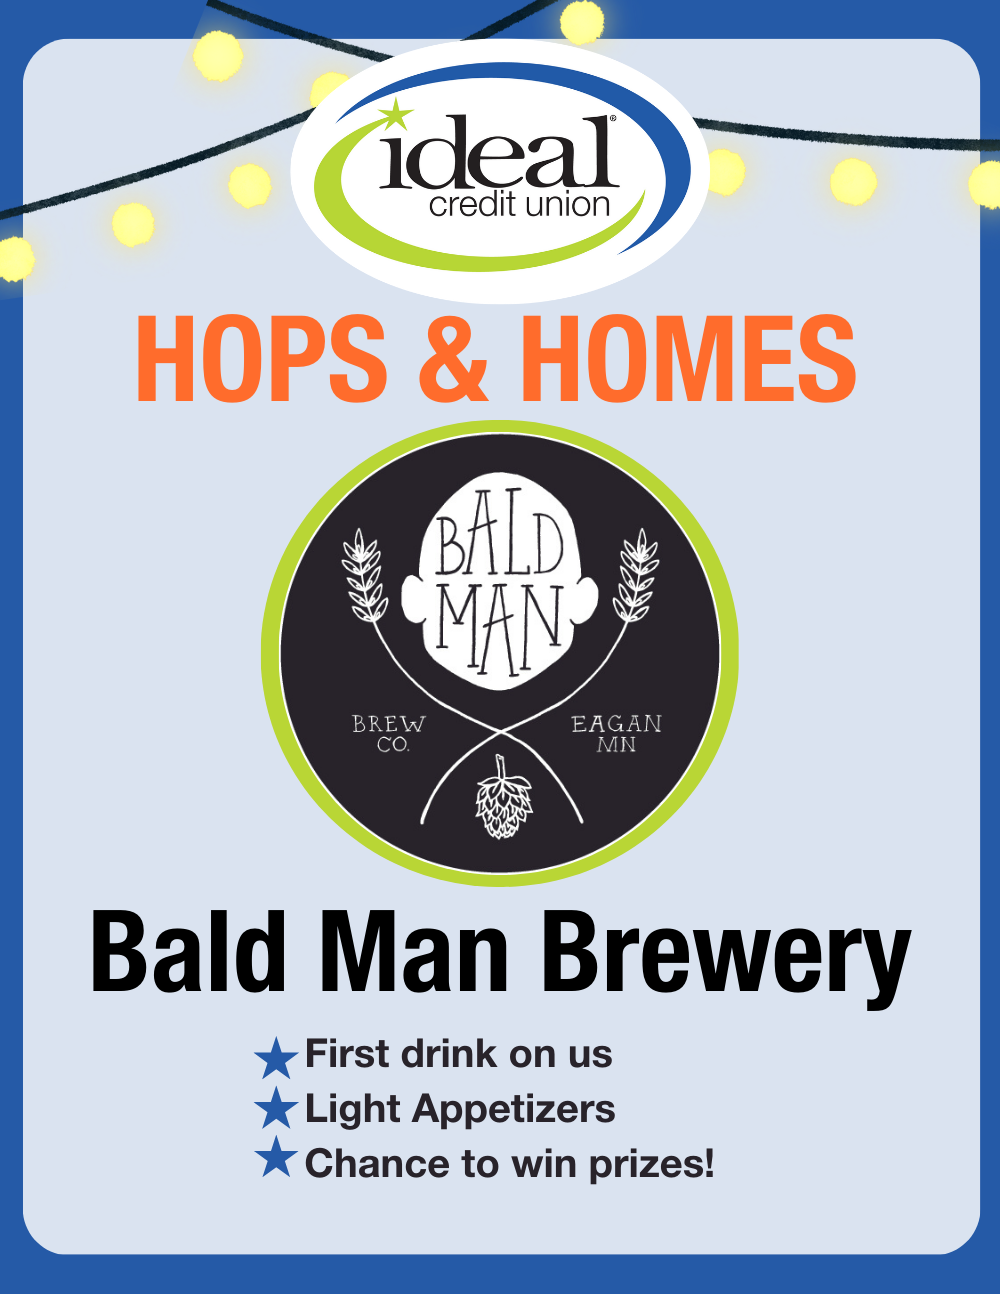 Hops & Homes at Bald Man Brewery!